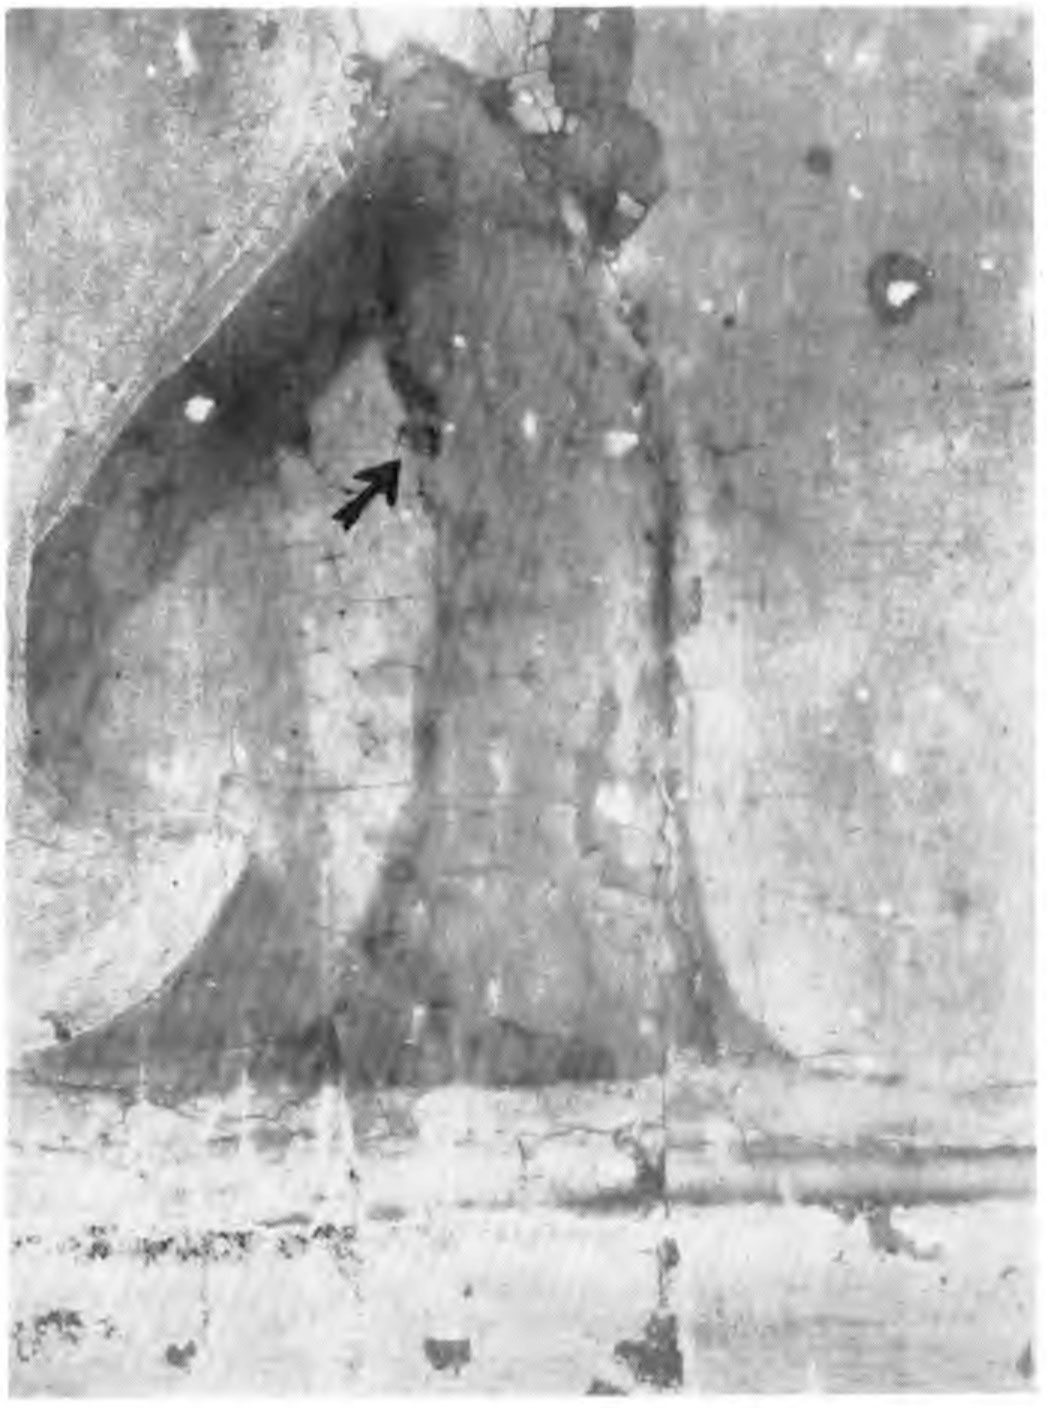 Табл. 13. Фрагмент из нижней части изображения, обычная радиограмма. Черная стрелка показывает место вскрытия на краю полотняной заплатки. Изображение уменьшено в два раза